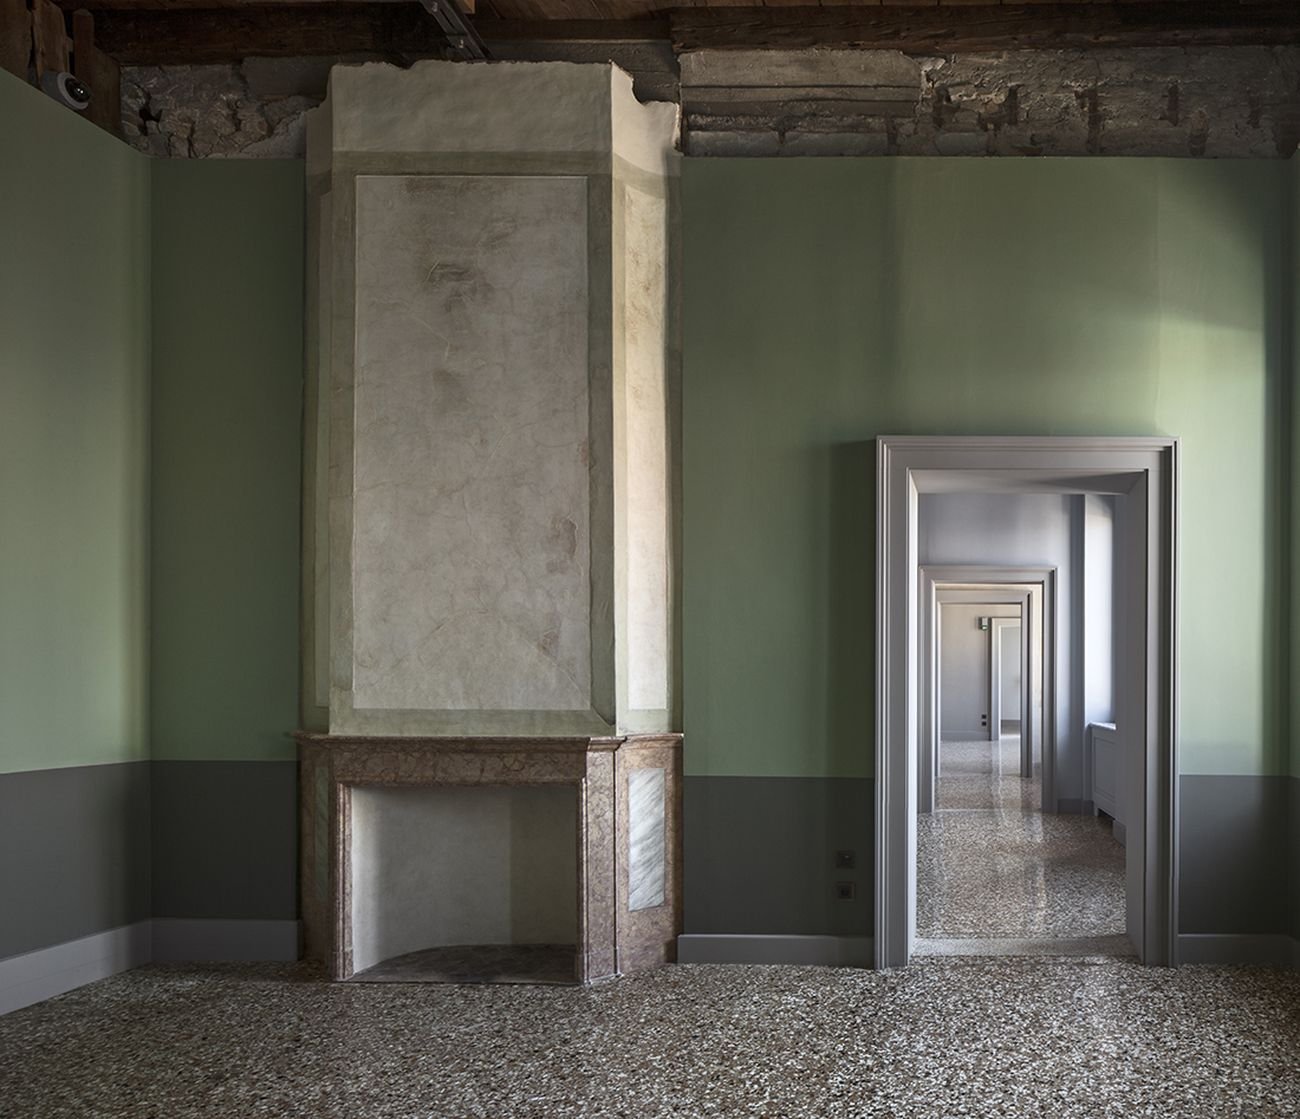 Una collezione veneziana. Progetto di Michele De Lucchi. Fondazione Querini Stampalia, Venezia 2018. Photo © Alessandra Chemollo